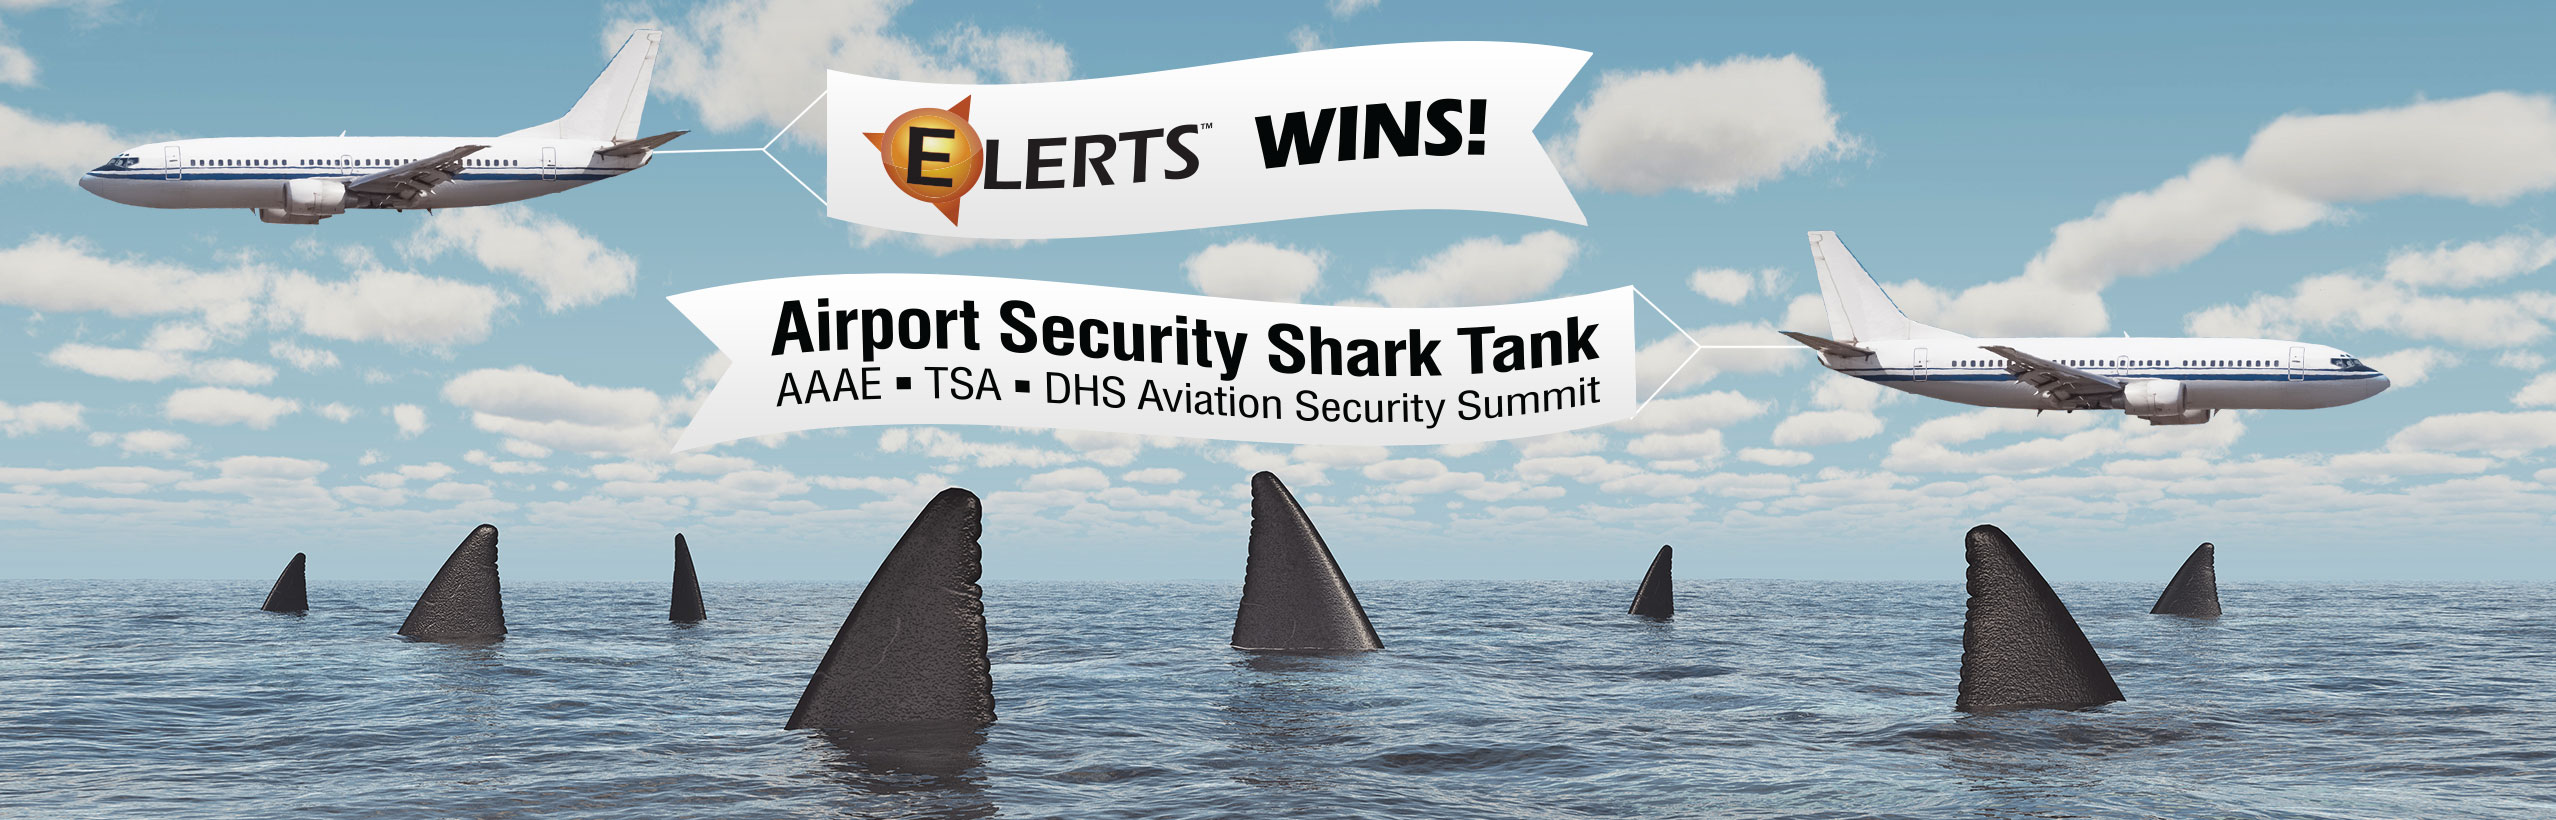 Airport Security Shark Tank